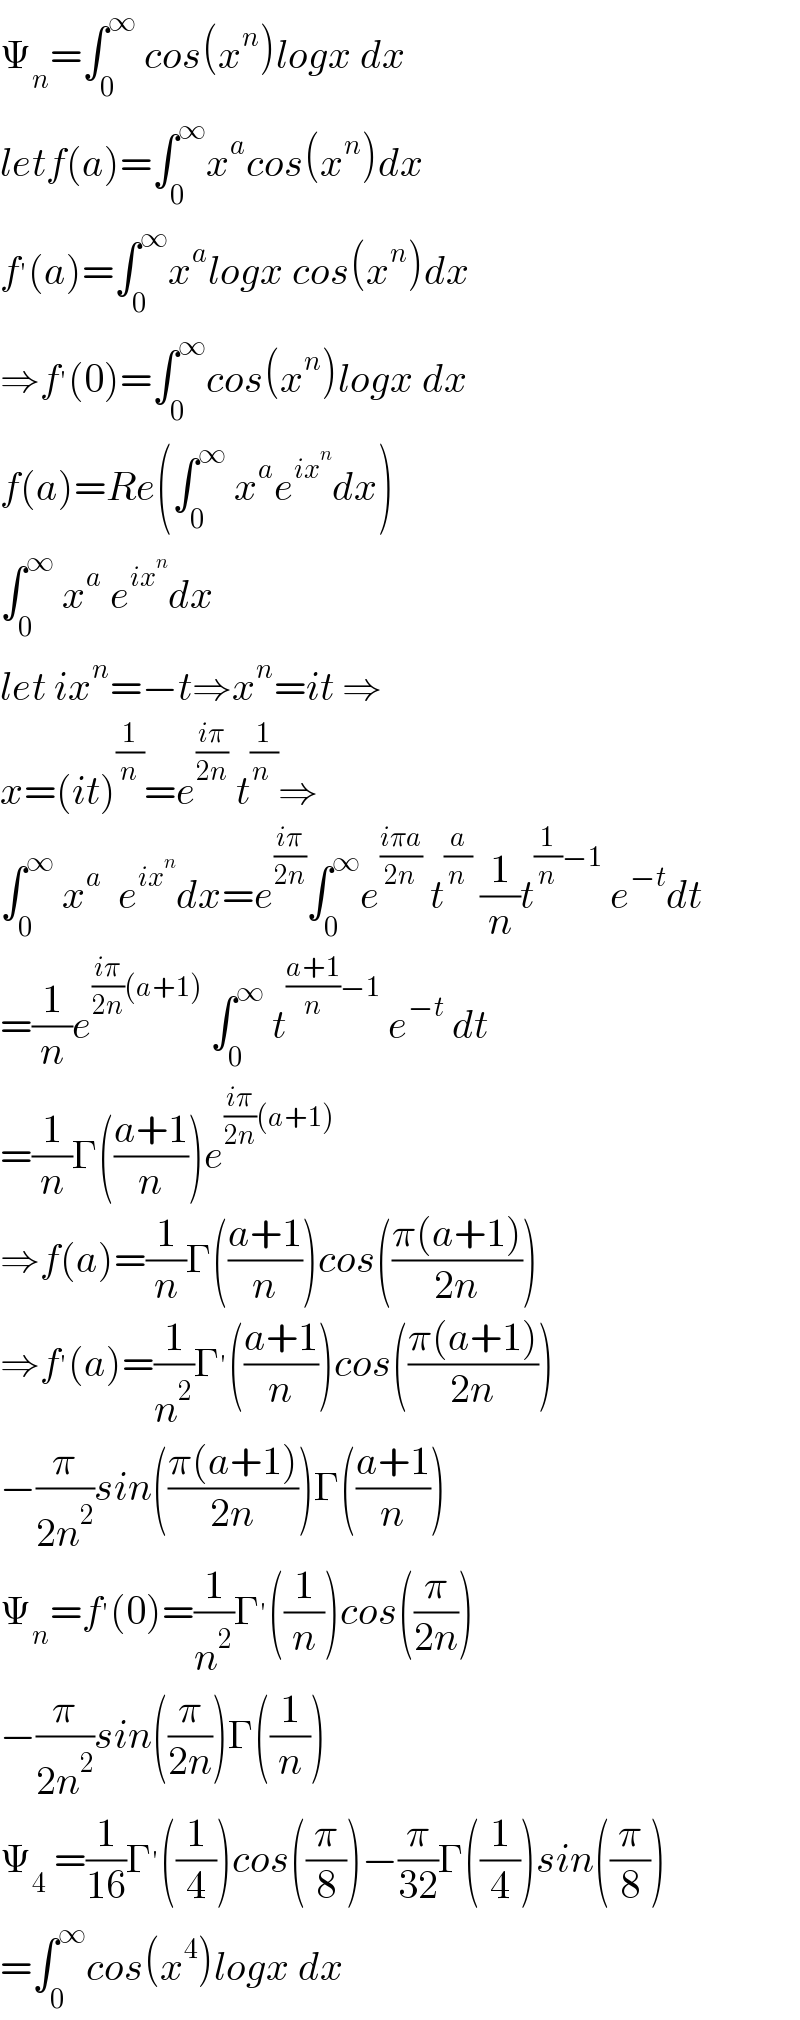 Ψ_n =∫_0 ^∞  cos(x^n )logx dx  letf(a)=∫_0 ^∞ x^a cos(x^n )dx  f^′ (a)=∫_0 ^∞ x^a logx cos(x^n )dx  ⇒f^′ (0)=∫_0 ^∞ cos(x^n )logx dx  f(a)=Re(∫_0 ^∞  x^a e^(ix^n ) dx)   ∫_0 ^∞  x^a  e^(ix^n ) dx  let ix^n =−t⇒x^n =it ⇒  x=(it)^(1/n) =e^((iπ)/(2n))  t^(1/(n )) ⇒  ∫_0 ^∞  x^a   e^(ix^n ) dx=e^((iπ)/(2n)) ∫_0 ^∞ e^((iπa)/(2n))  t^(a/n)  (1/n)t^((1/n)−1)  e^(−t) dt  =(1/n)e^(((iπ)/(2n))(a+1))  ∫_0 ^∞  t^(((a+1)/n)−1)  e^(−t)  dt  =(1/n)Γ(((a+1)/n))e^(((iπ)/(2n))(a+1))   ⇒f(a)=(1/n)Γ(((a+1)/n))cos(((π(a+1))/(2n)))  ⇒f^′ (a)=(1/n^2 )Γ^′ (((a+1)/n))cos(((π(a+1))/(2n)))  −(π/(2n^2 ))sin(((π(a+1))/(2n)))Γ(((a+1)/n))  Ψ_n =f^′ (0)=(1/n^2 )Γ^′ ((1/n))cos((π/(2n)))  −(π/(2n^2 ))sin((π/(2n)))Γ((1/n))  Ψ_4  =(1/(16))Γ^′ ((1/4))cos((π/8))−(π/(32))Γ((1/4))sin((π/8))  =∫_0 ^∞ cos(x^4 )logx dx  